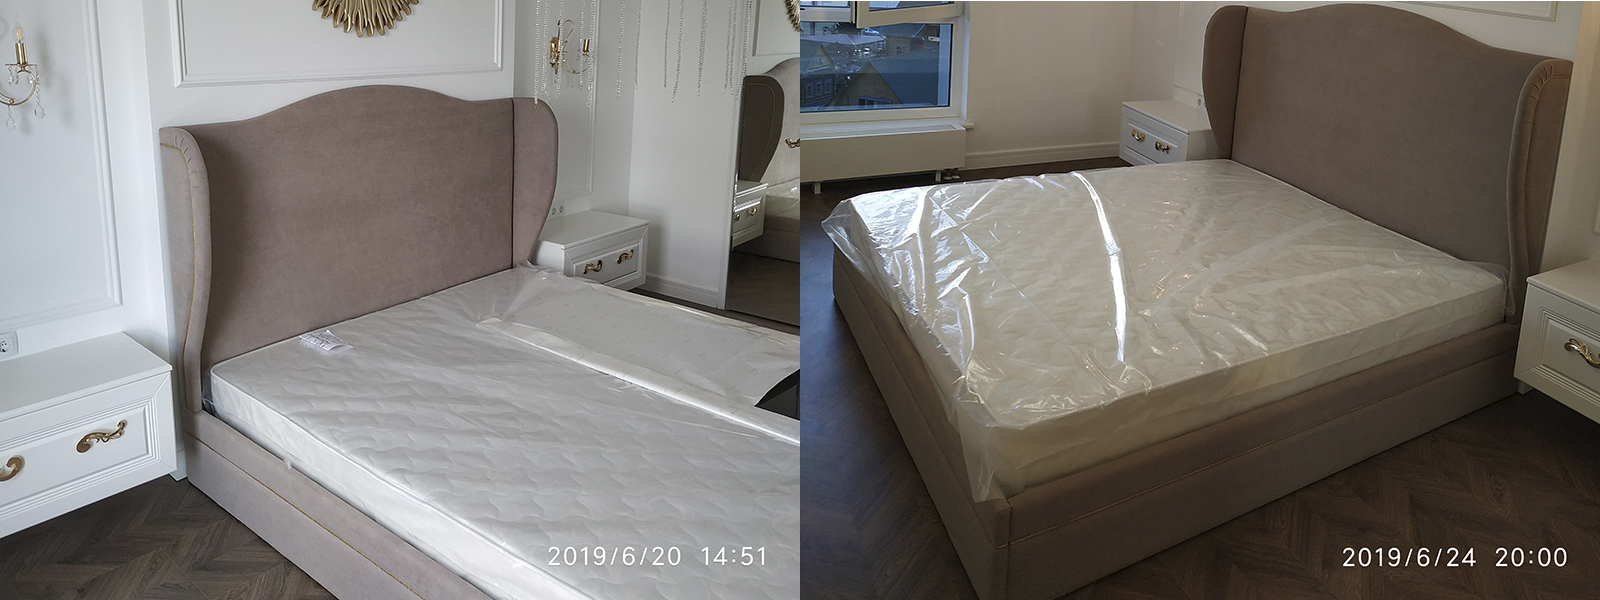 Обтяжка кровати в Евпатории - разумная стоимость, расчет по фото, высокое качество работы